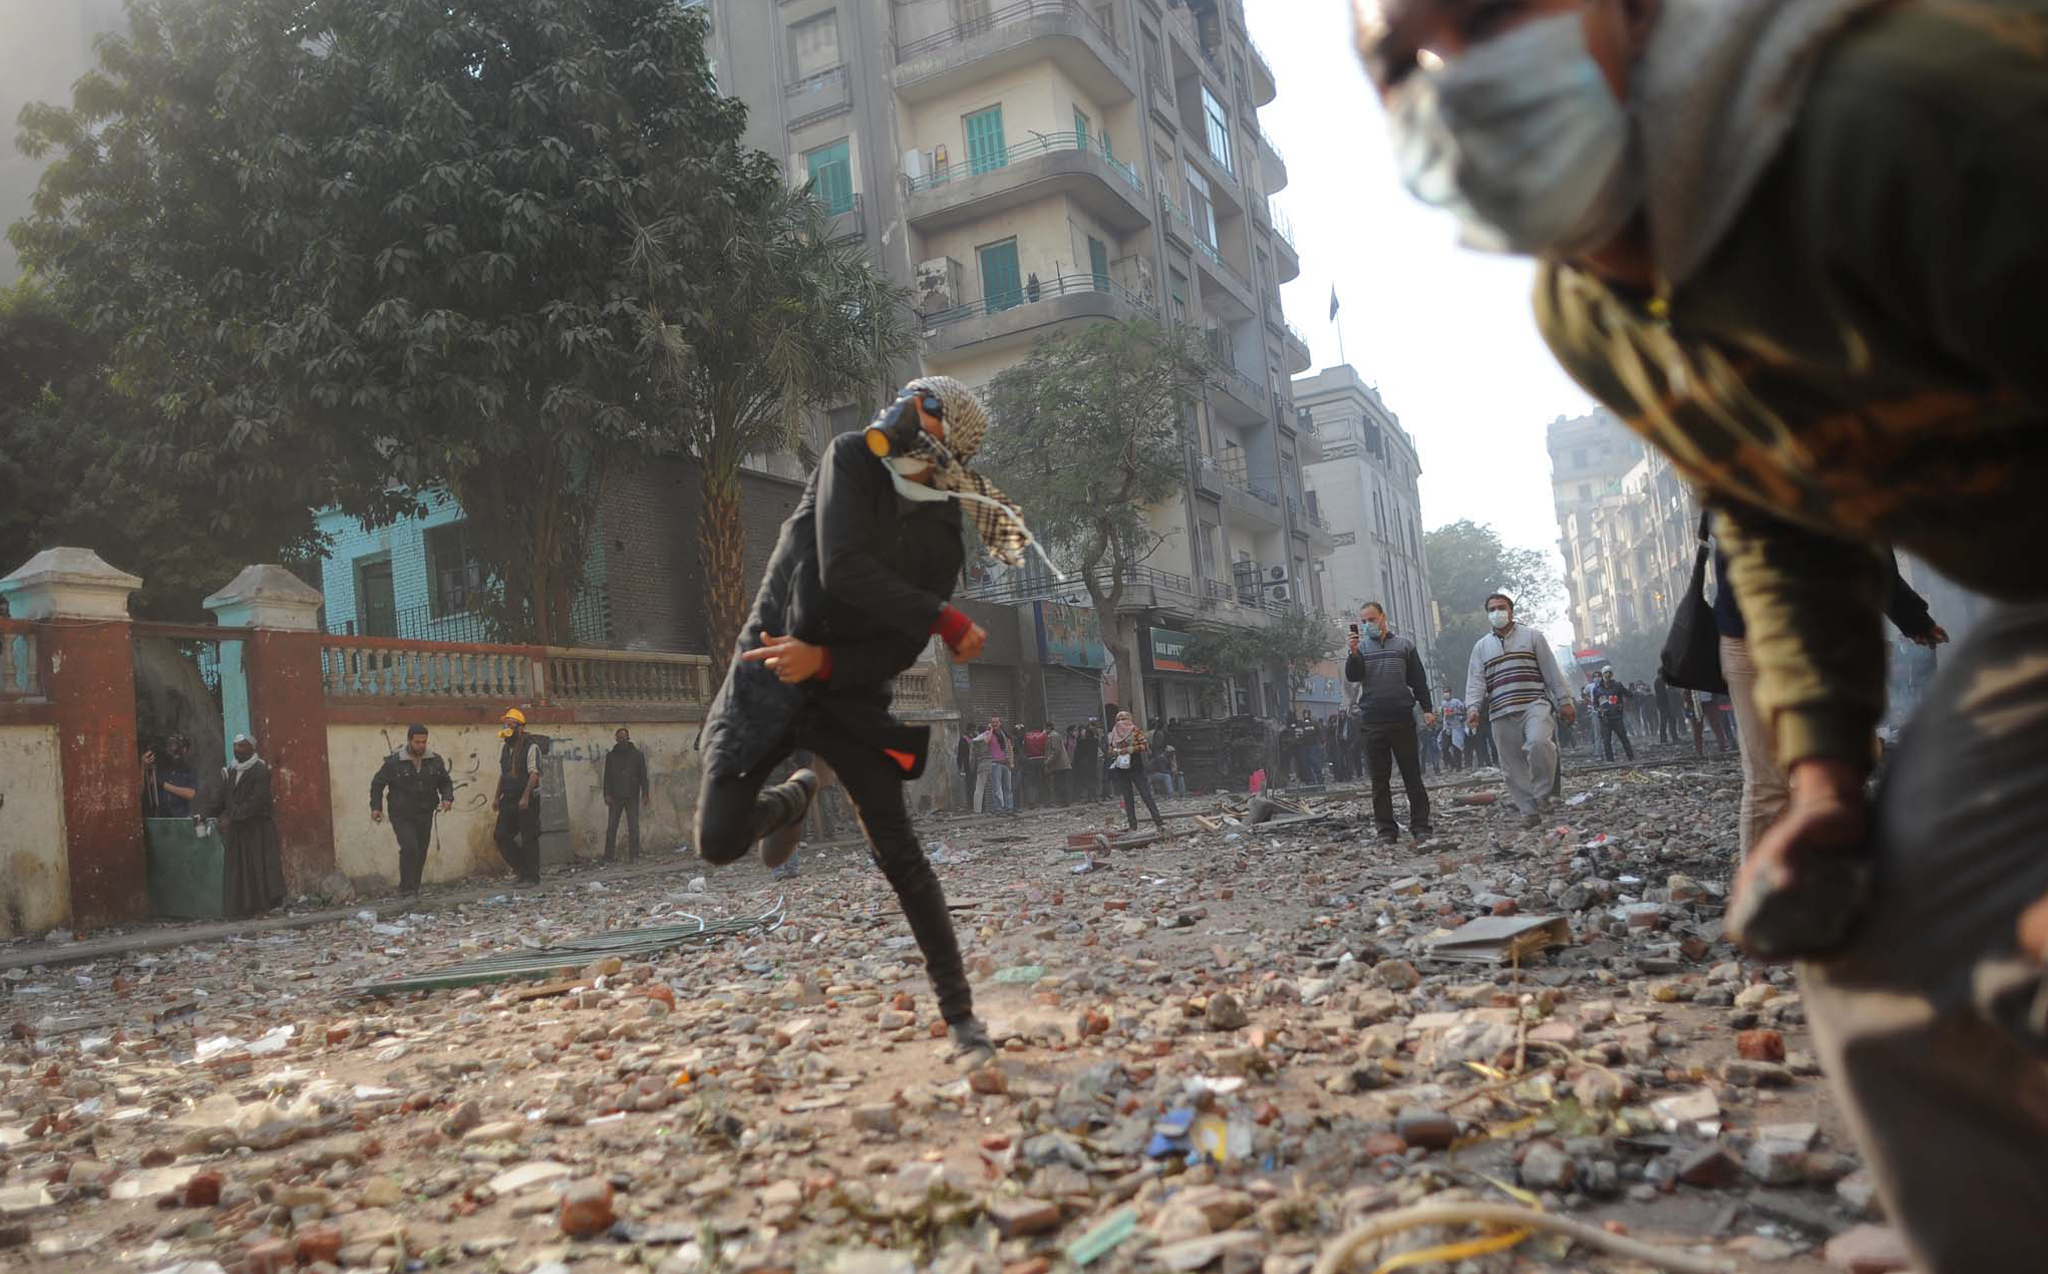 Une bataille rangée oppose les deux camps jusqu'à tard dans la nuit. Outre des pierres, des bâtons et des cocktails Molotov, des chameaux sont utilisés<br> par les partisans du pouvoir pour tenter de chasser les manifestants de la Place Tahrir.
(Crédit photo : Mehdi Chebil)